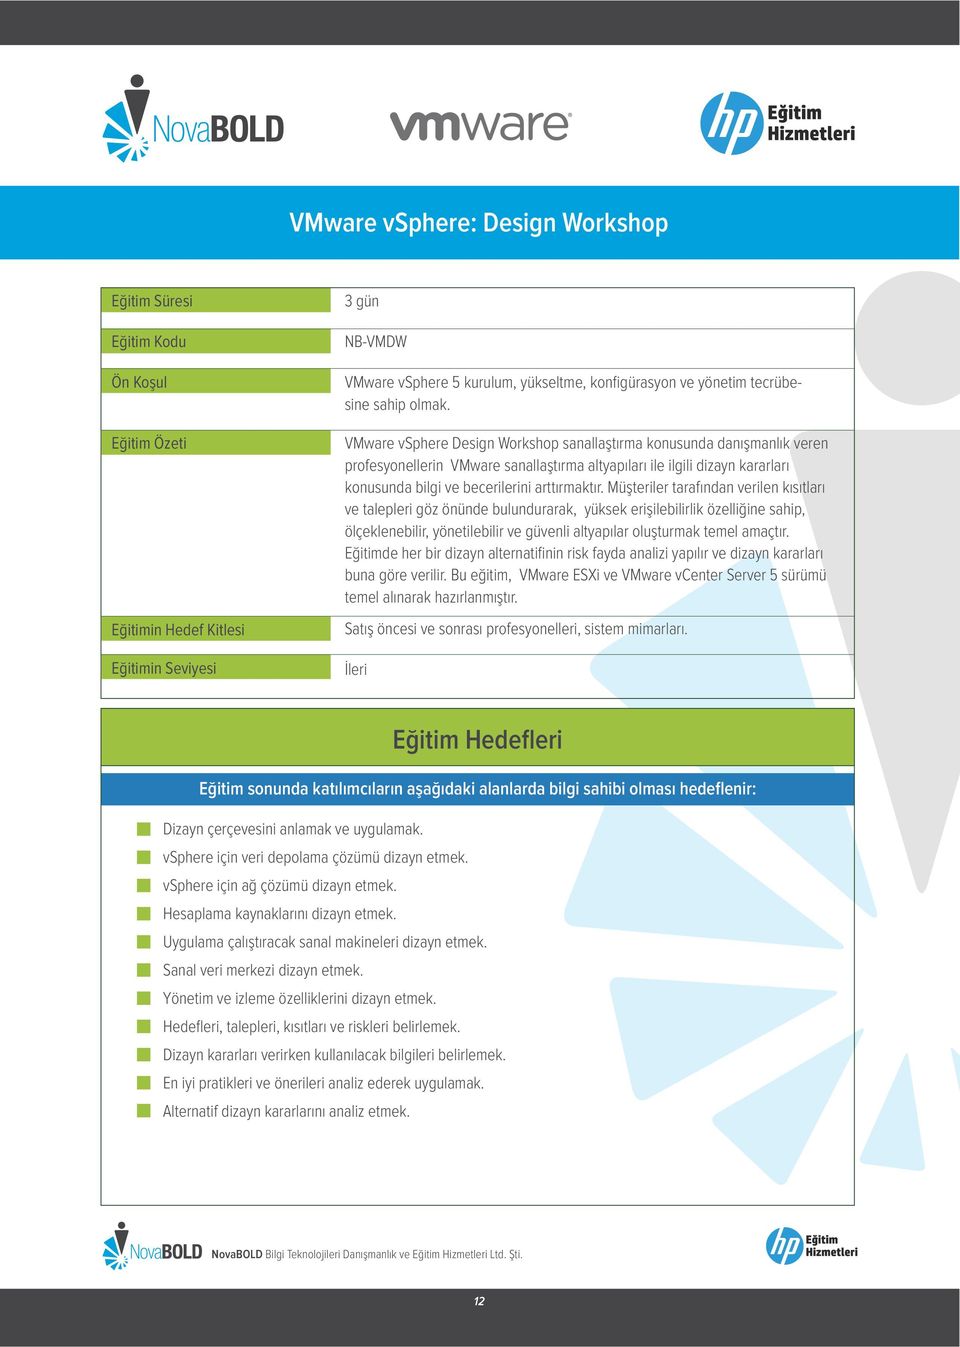 VMware vsphere Design Workshop sanallaştırma konusunda danışmanlık veren profesyonellerin VMware sanallaştırma altyapıları ile ilgili dizayn kararları konusunda bilgi ve becerilerini arttırmaktır.